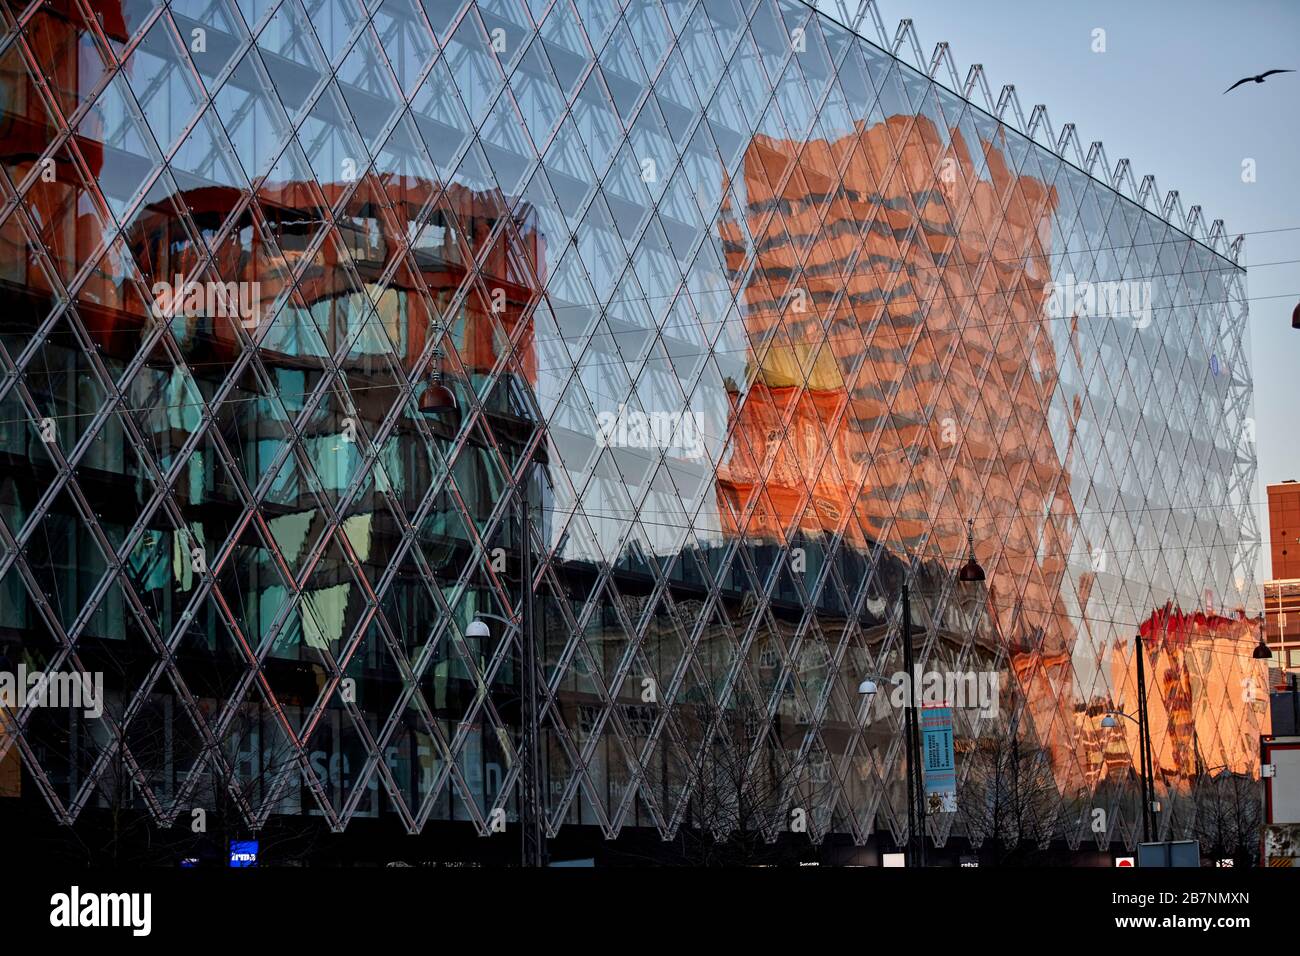 Kopenhagen, Dänemarks Hauptstadt, der Rathausplatz modernes Einkaufszentrum spiegelt das moderne Gebäude wider Stockfoto